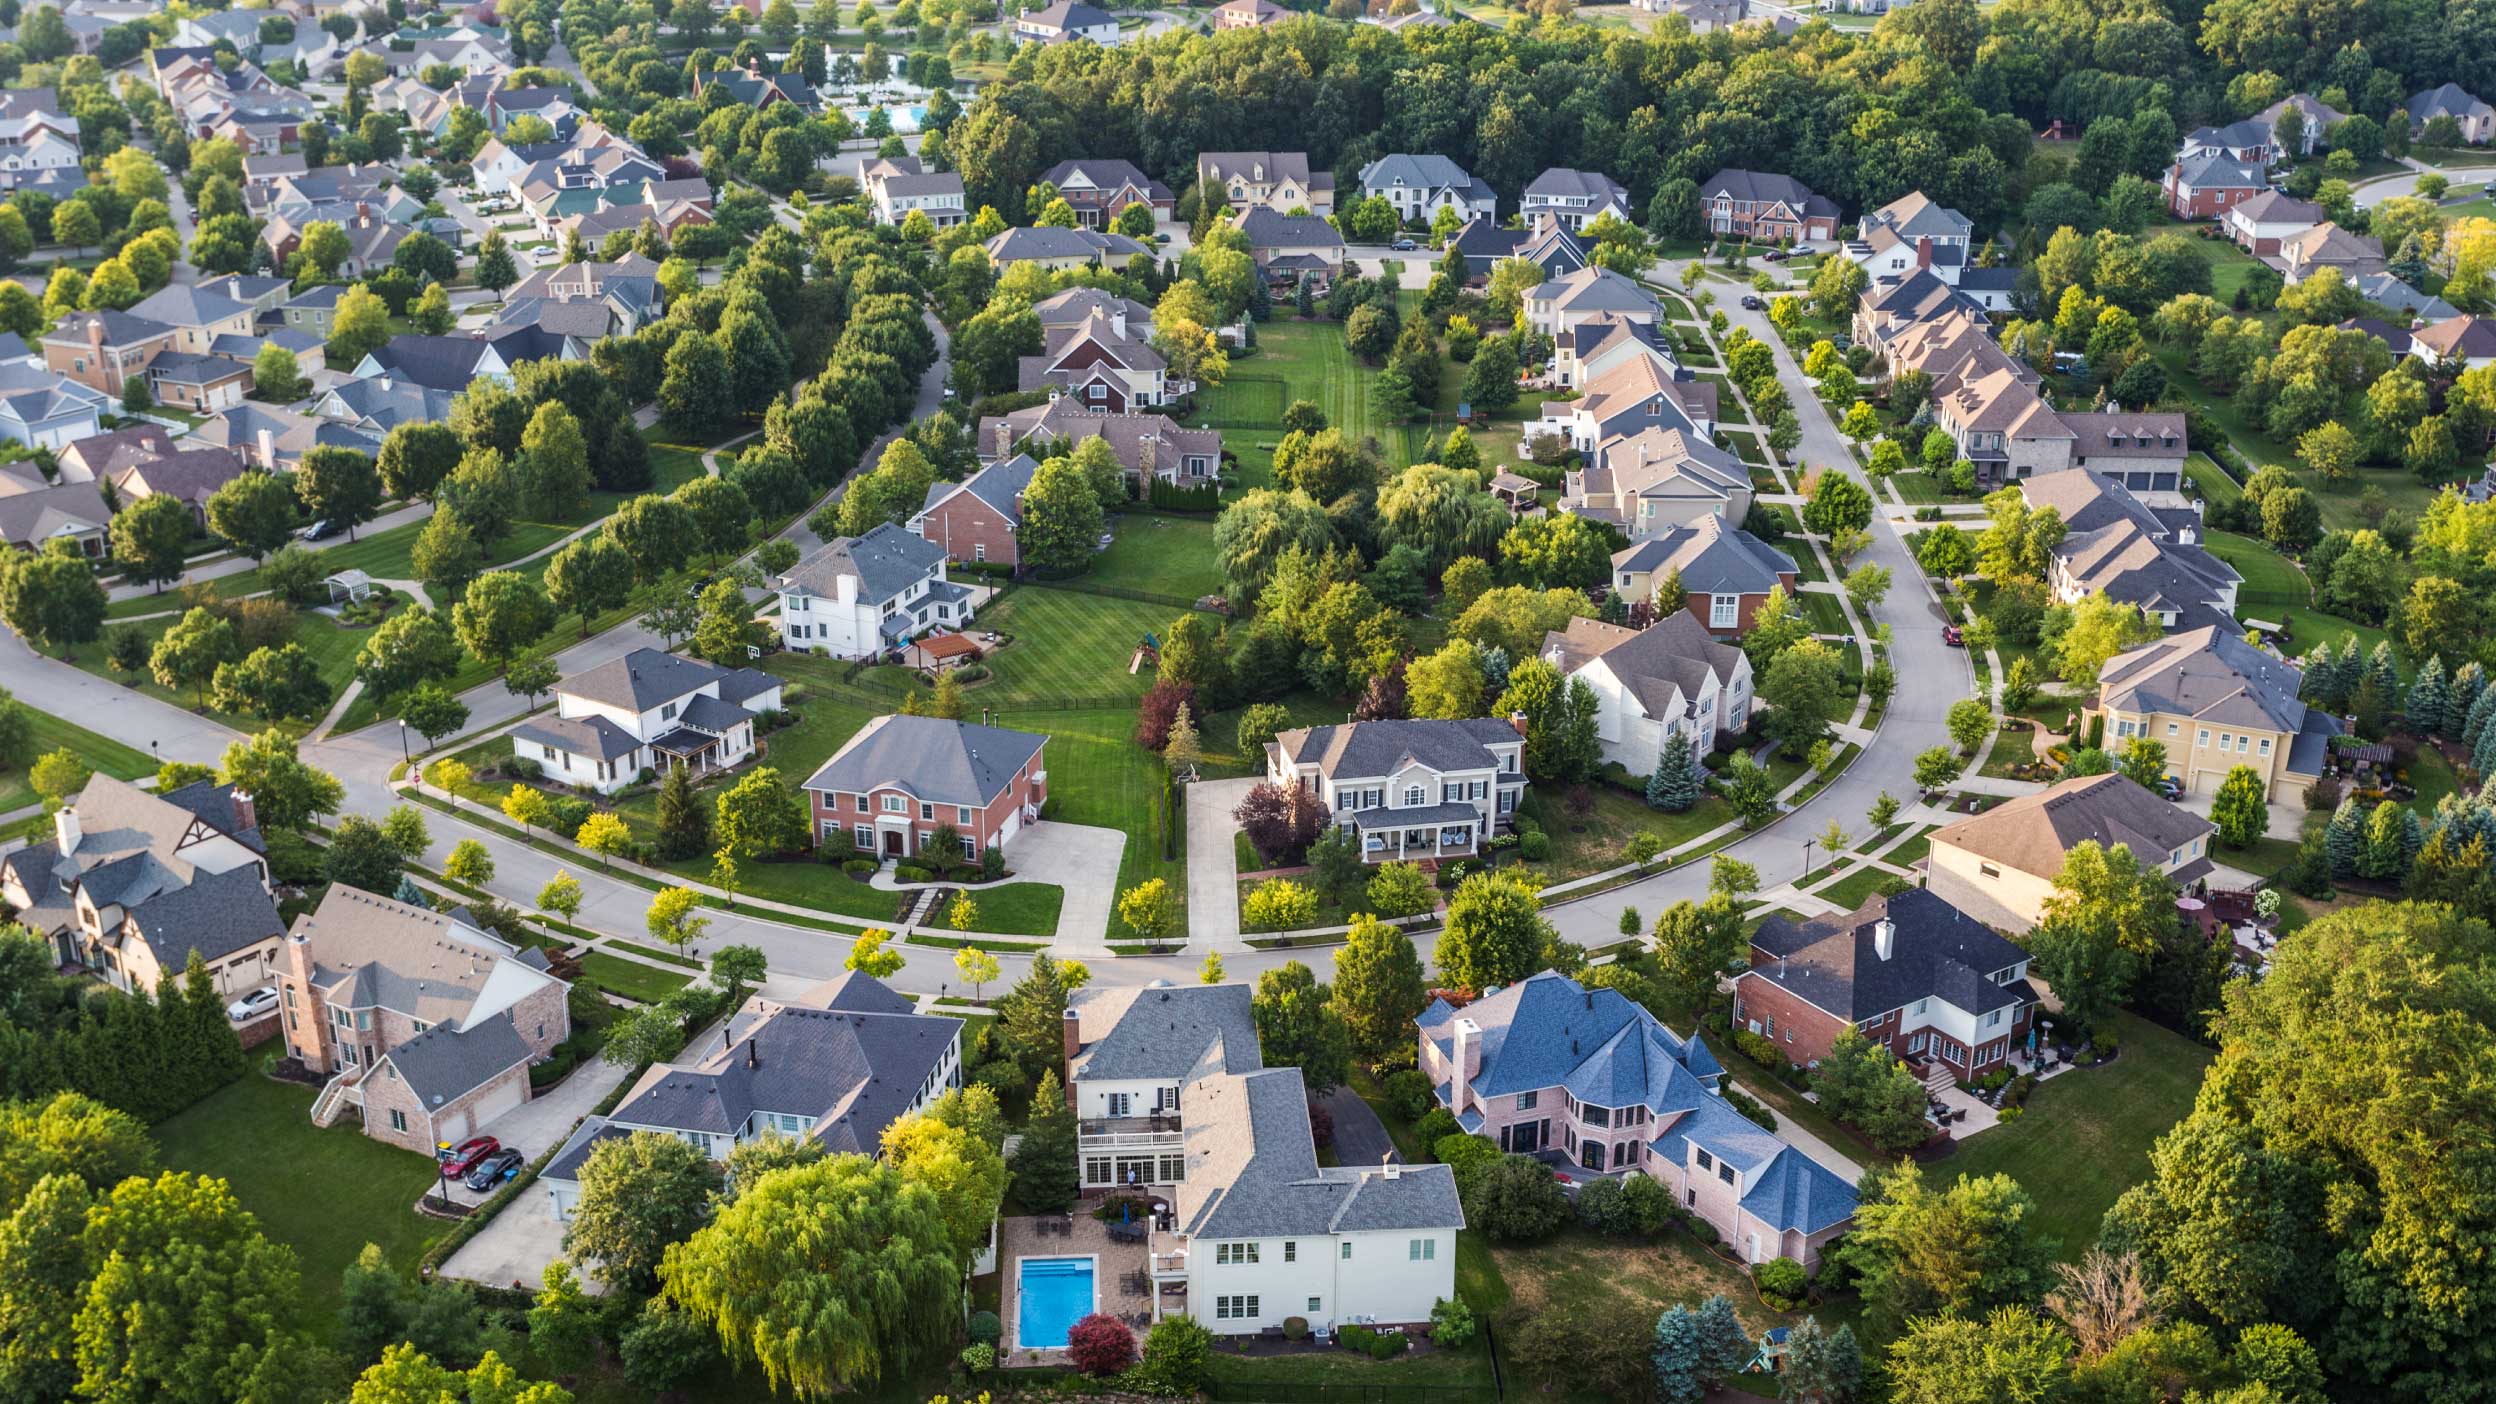 Drei Gründe, die jetzt für eine Anlage in Immobilienkredite sprechen